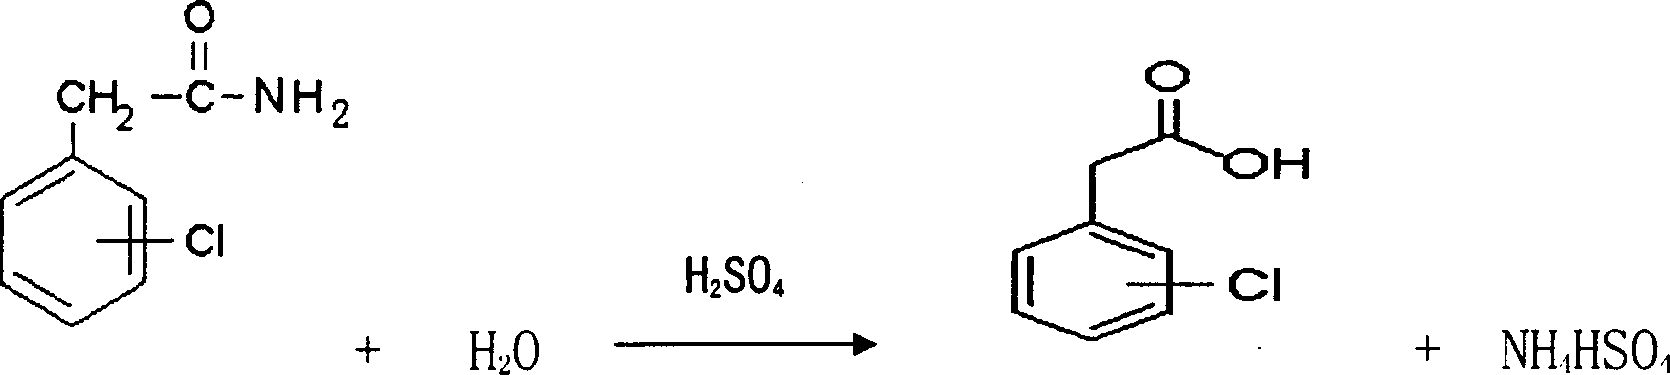 Preparation method of chlorophenyl acetic acid